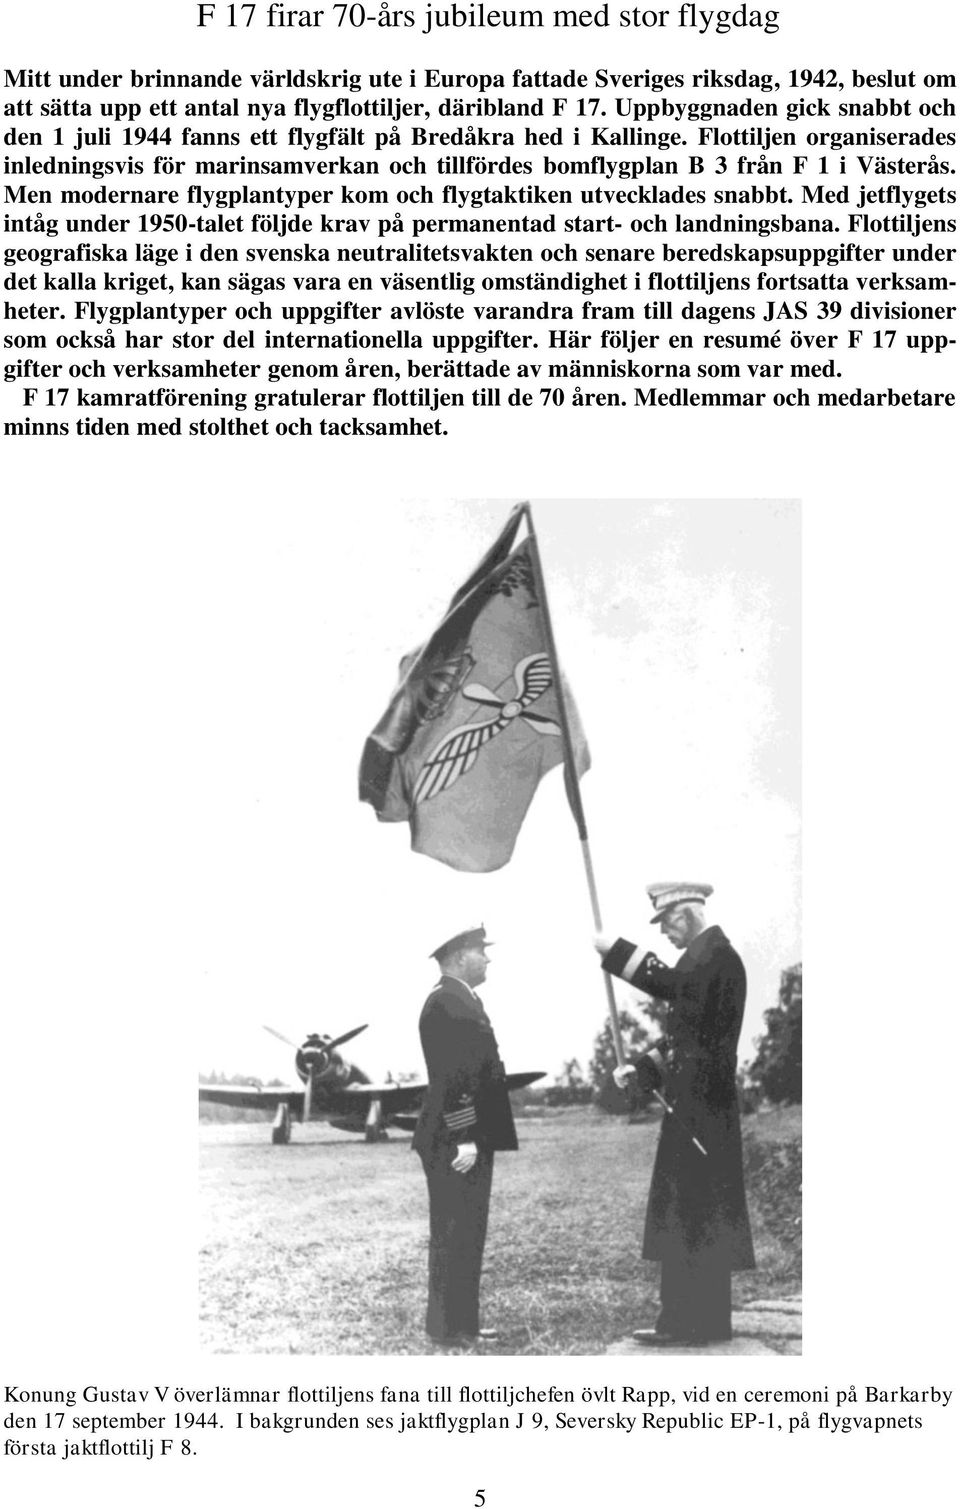 Flottiljen organiserades inledningsvis för marinsamverkan och tillfördes bomflygplan B 3 från F 1 i Västerås. Men modernare flygplantyper kom och flygtaktiken utvecklades snabbt.